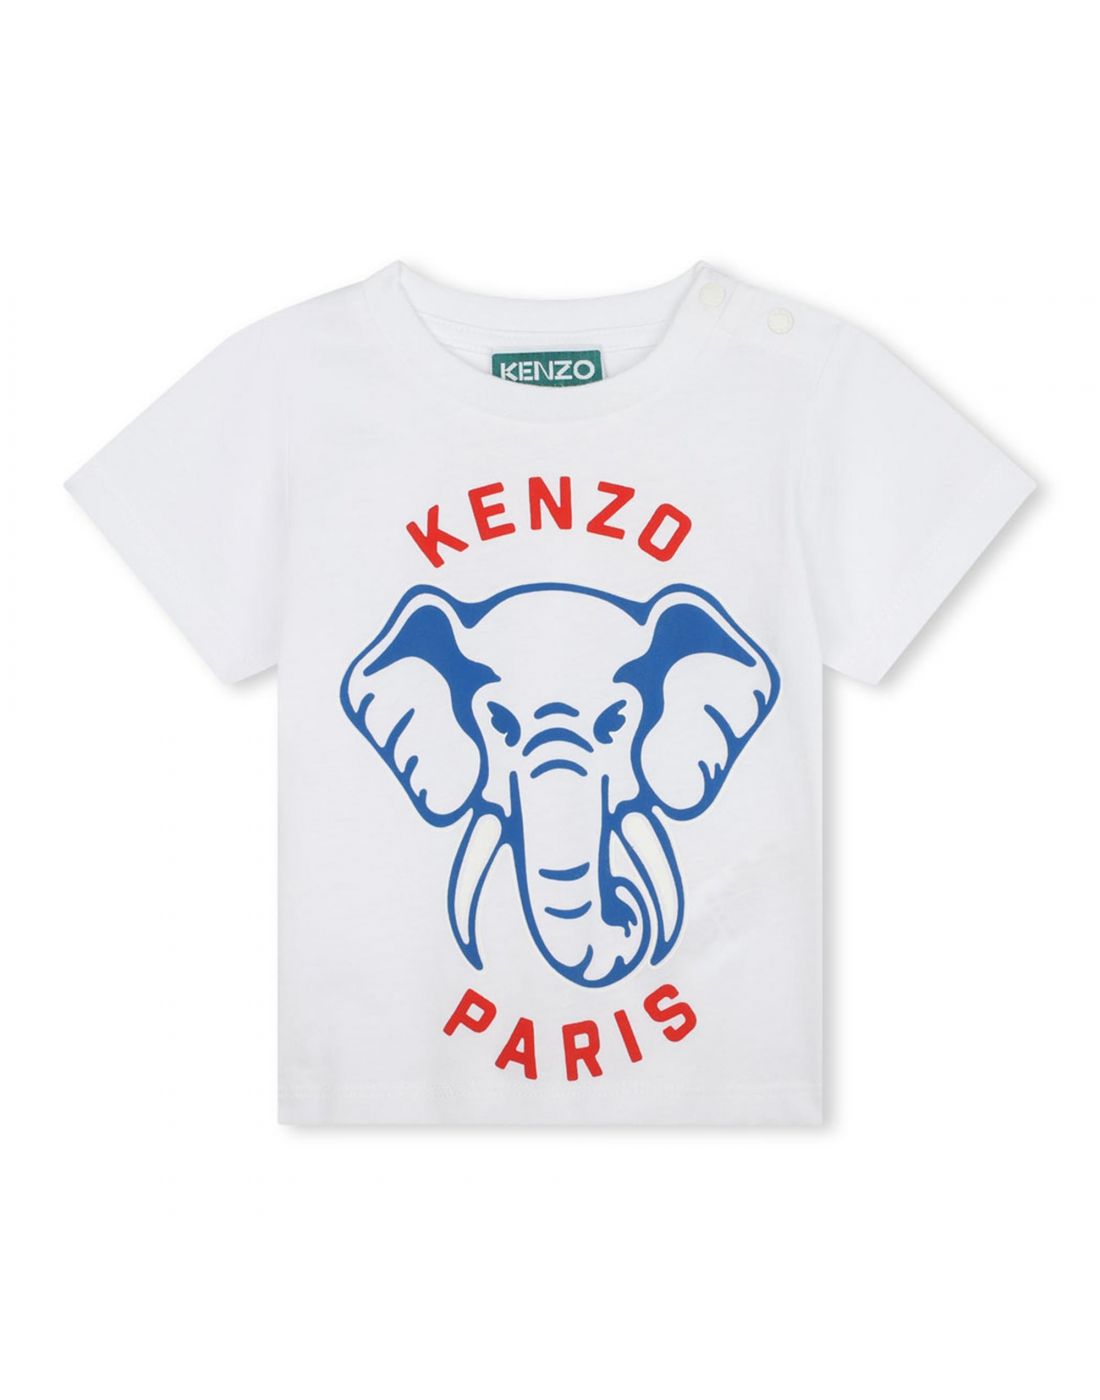 Βρεφική Μπλούζα Kenzo, Kenzo, 24162556 | LapinKids.com | LAPIN KIDS